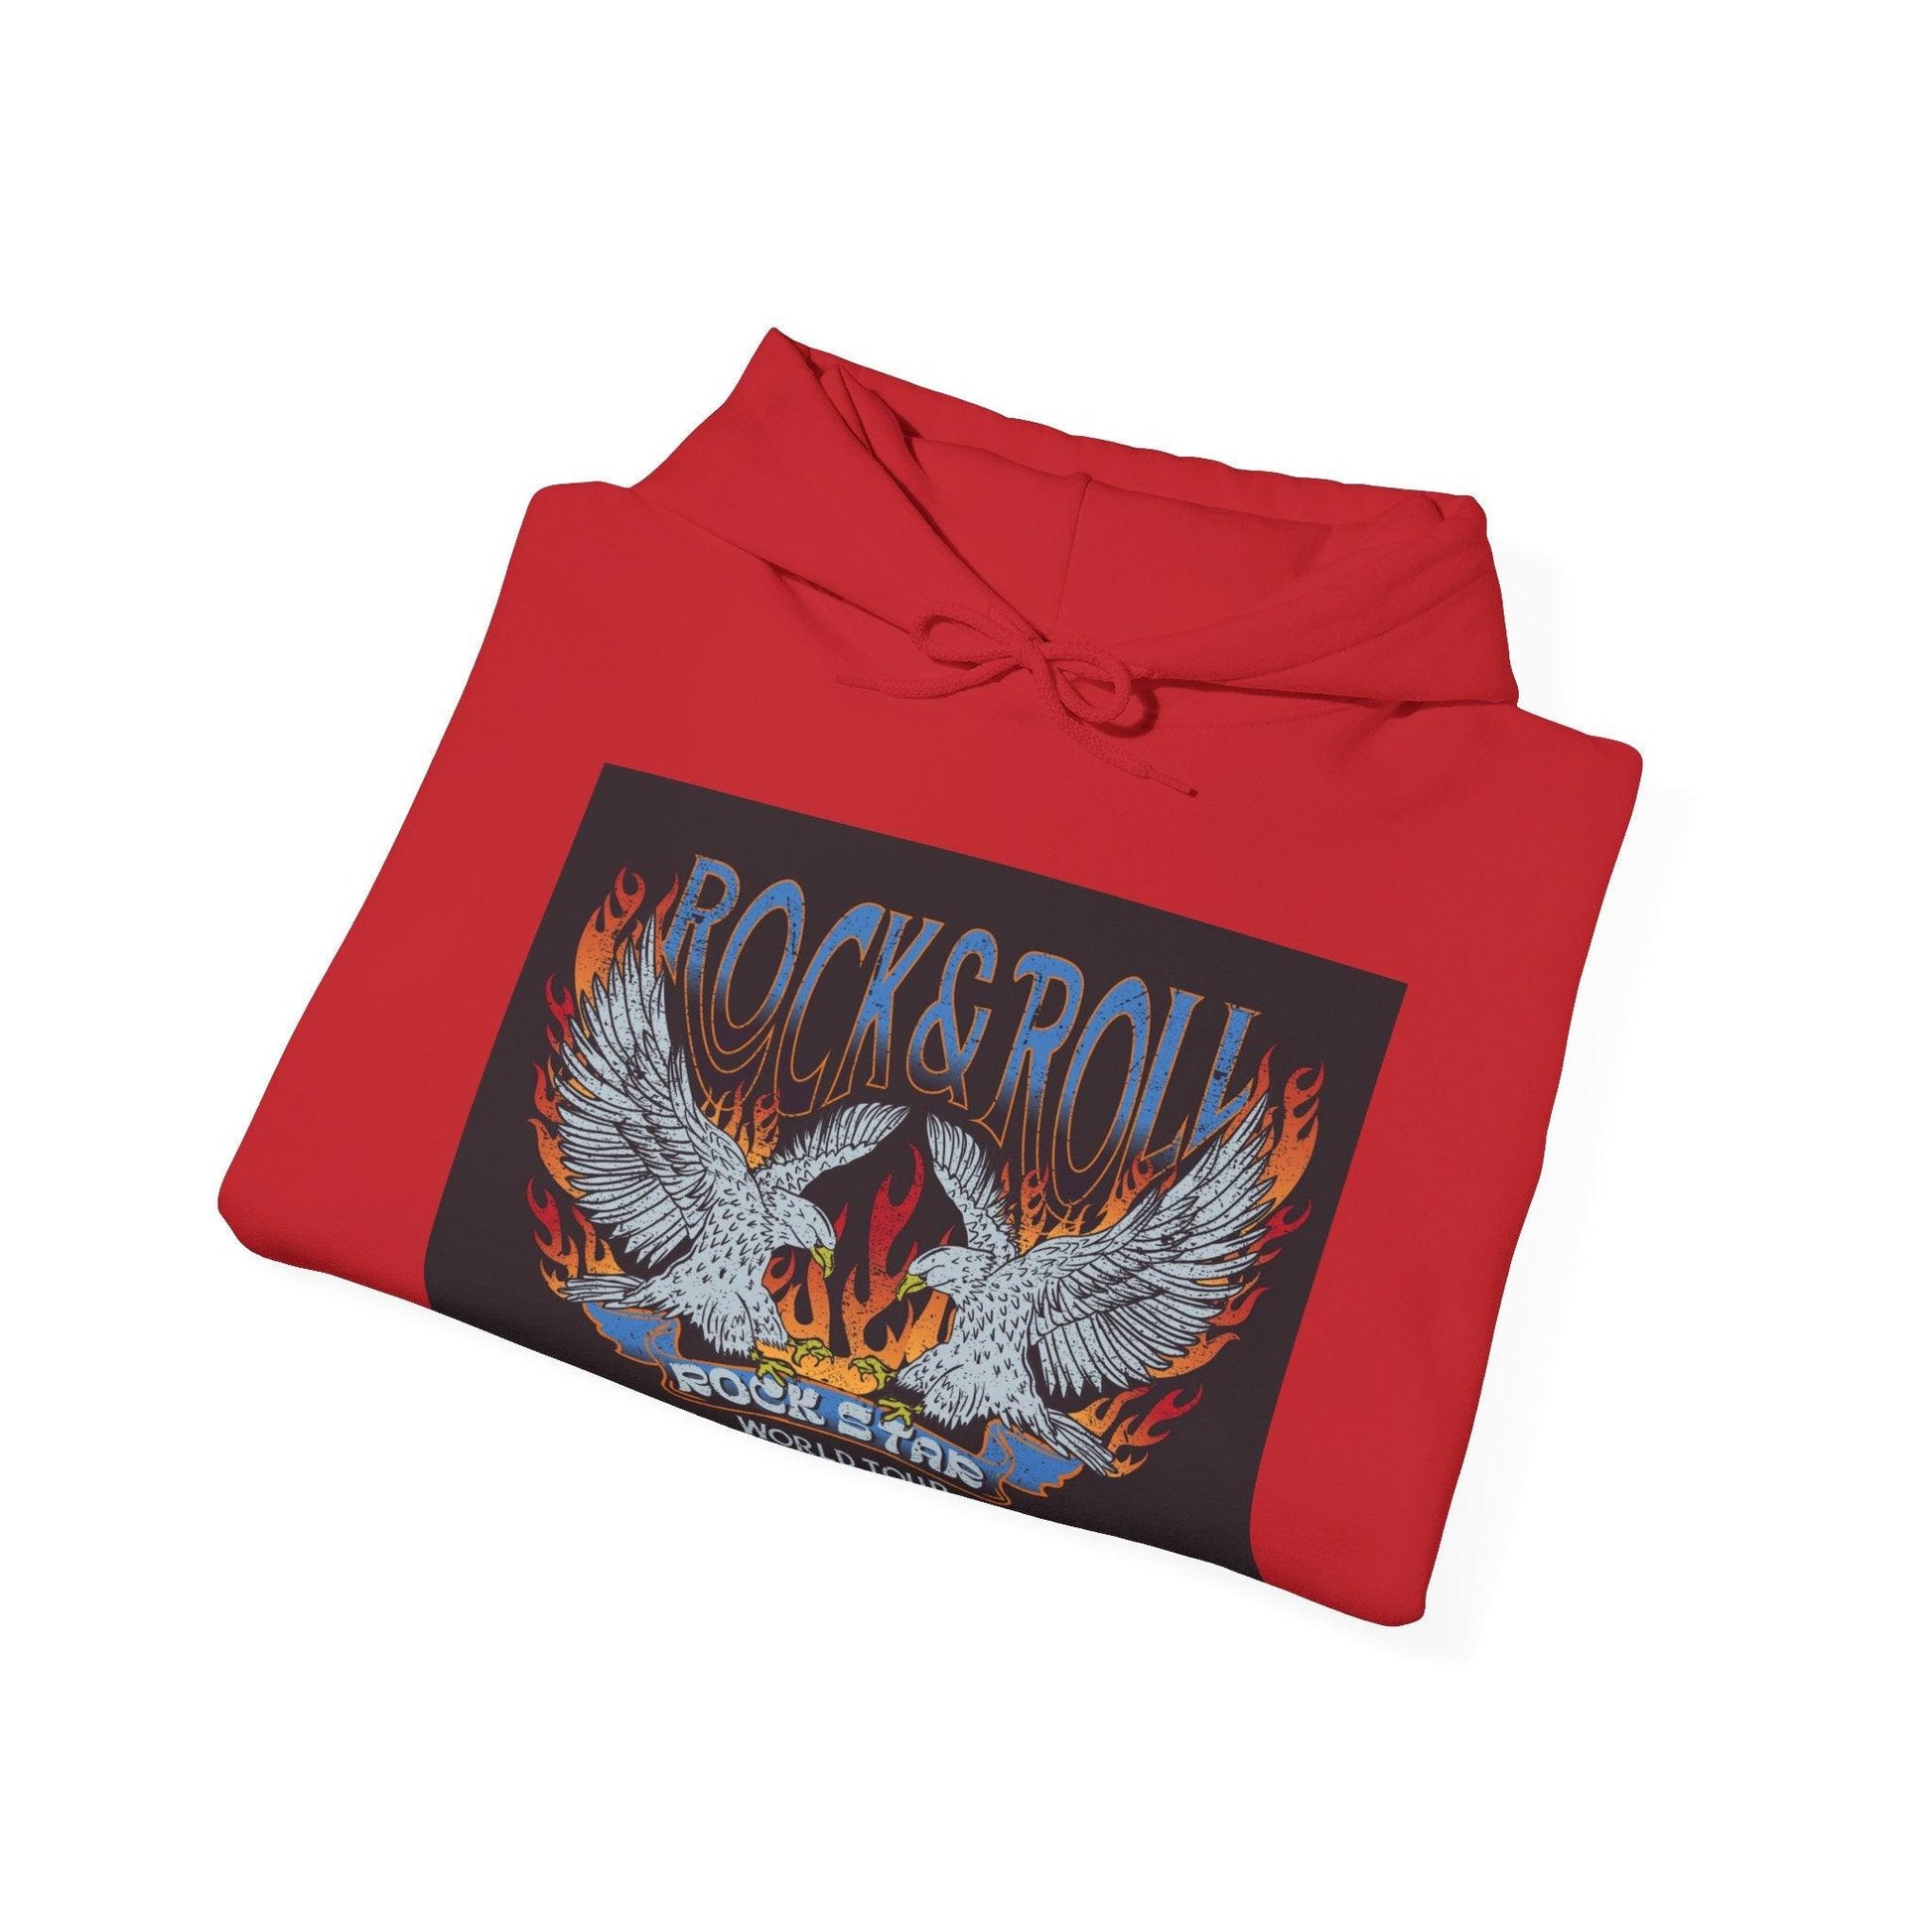 Rock & Roll Rock Star Unisex Heavy Blend™ Hooded Sweatshirt - Lizard Vigilante